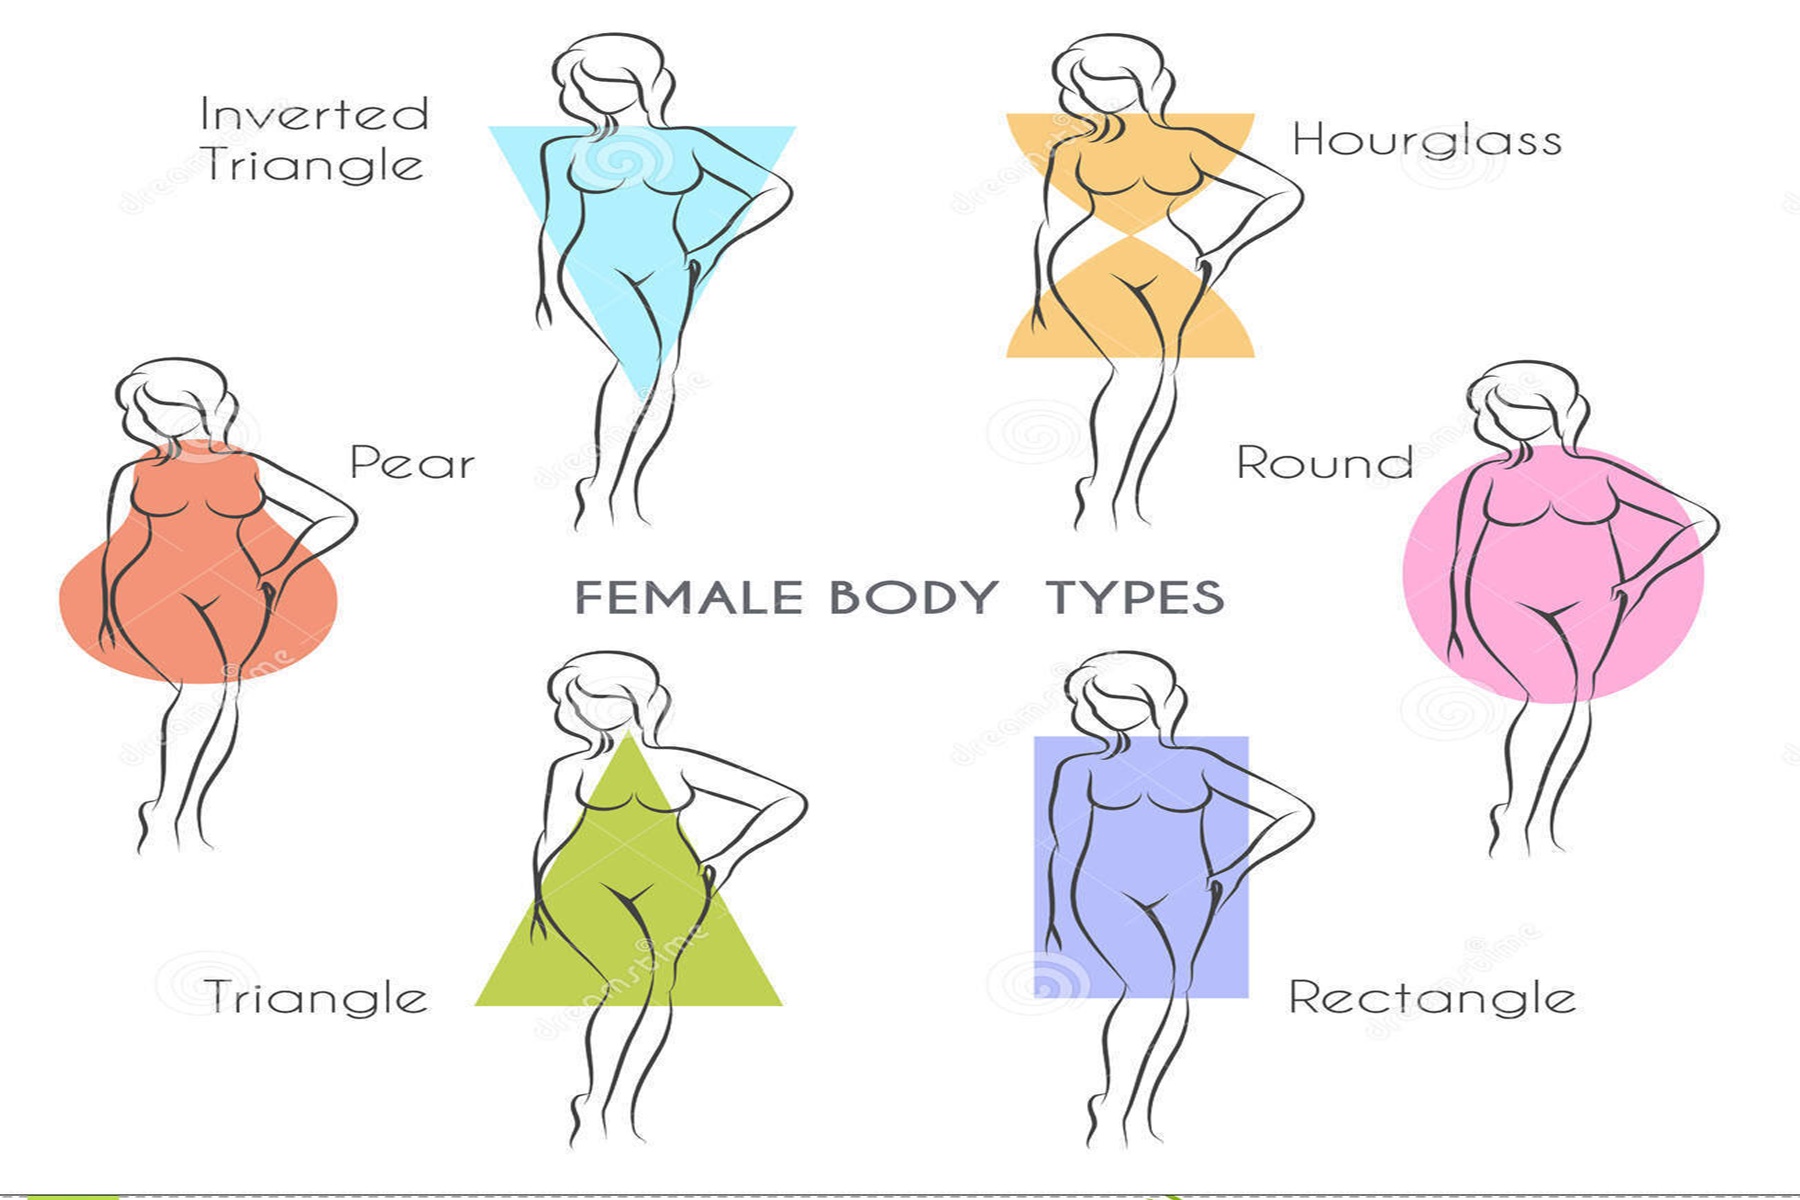 Σχήματα σώματος : Δες σε ποιον τύπο ανήκεις